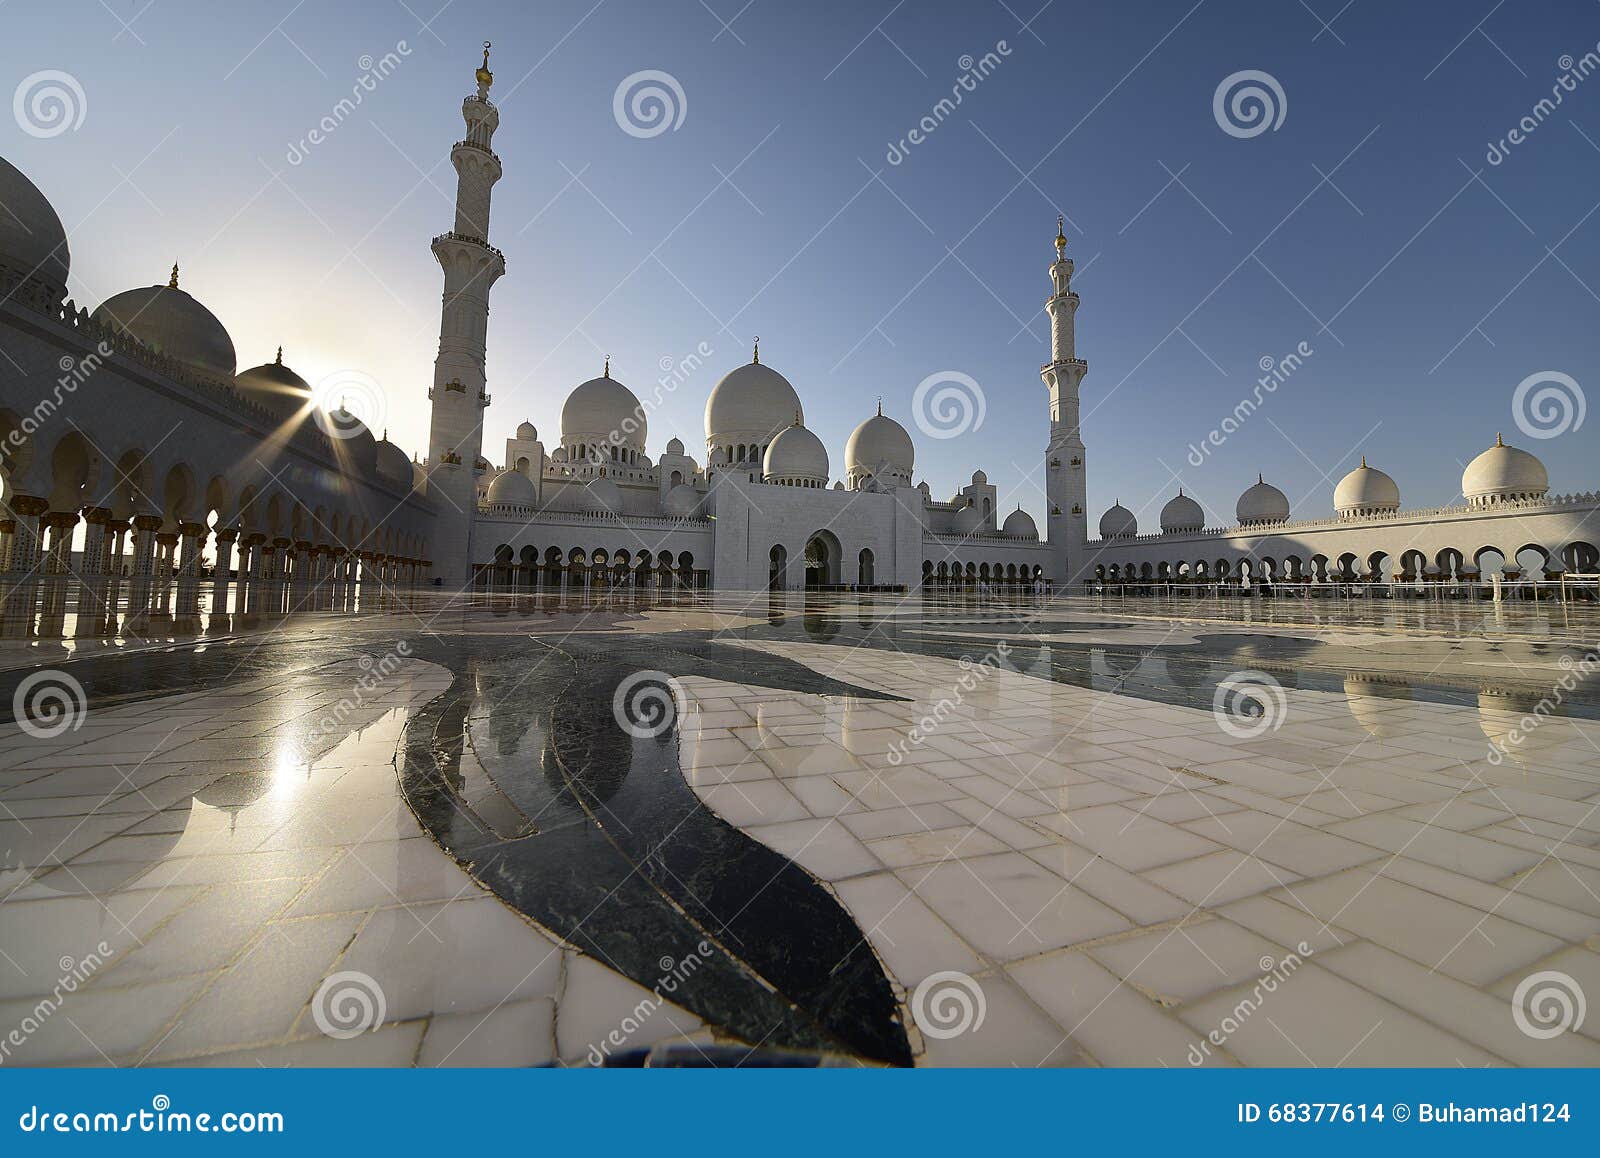 zayed mosque in abu dabi